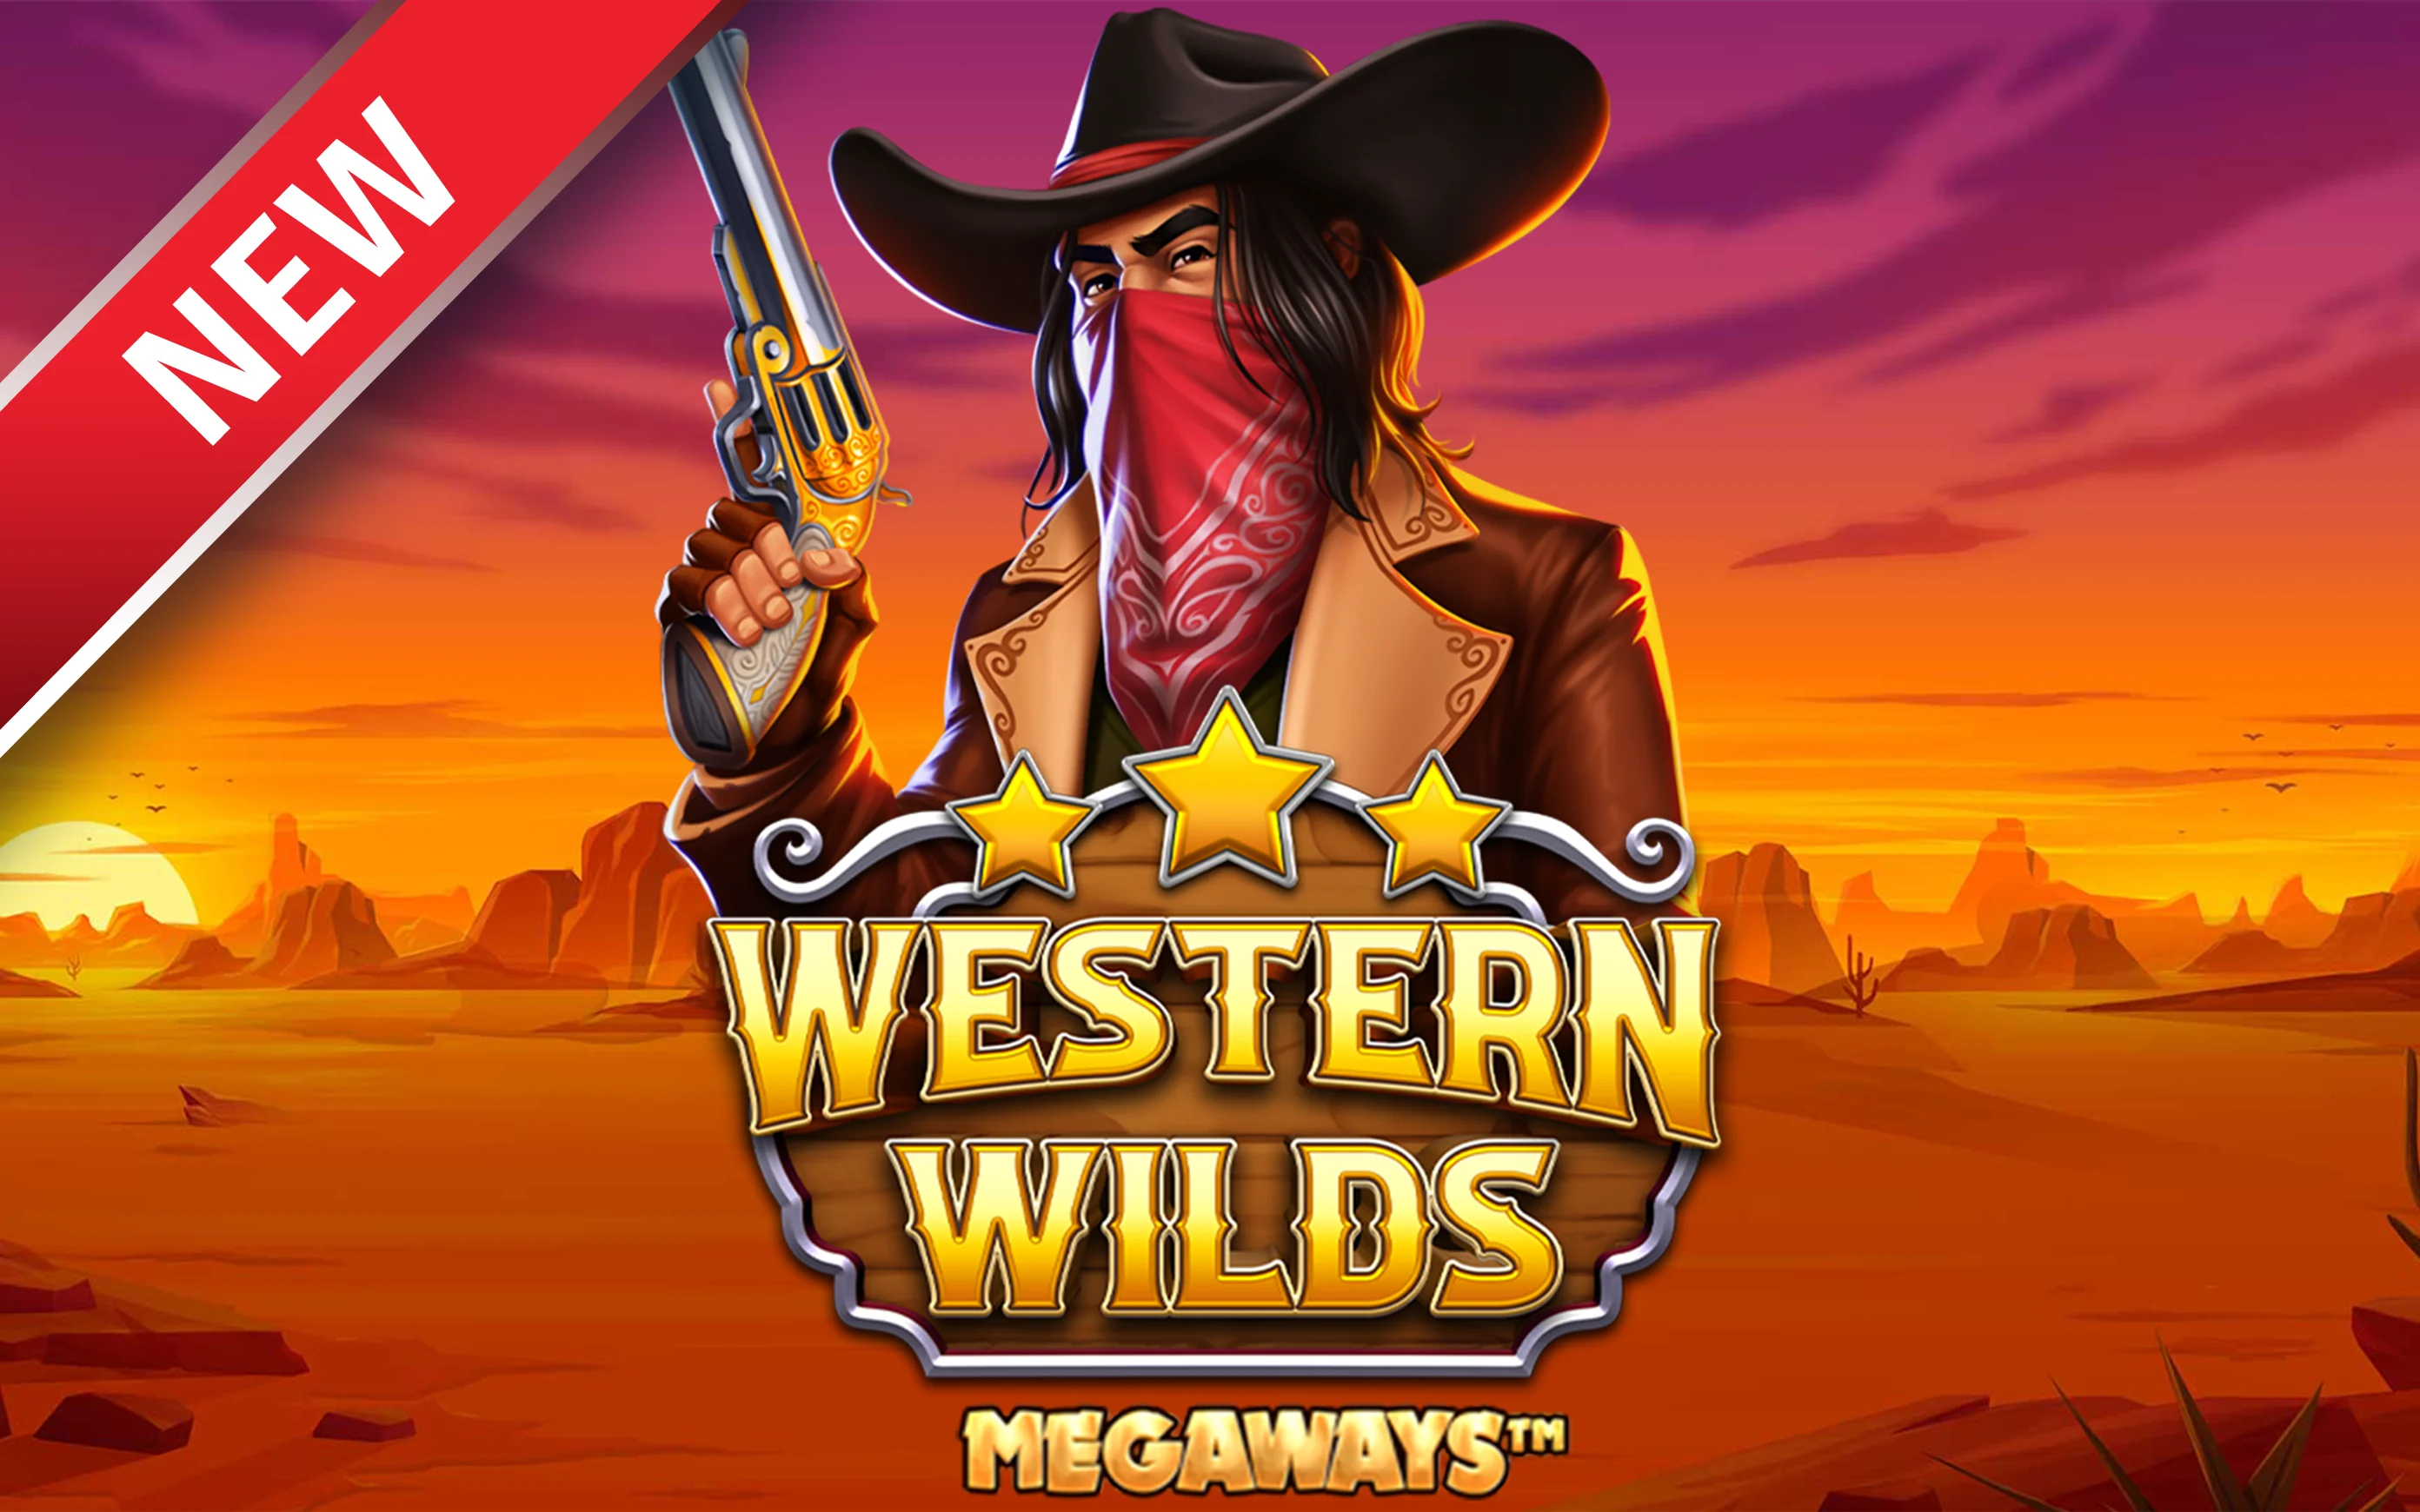 Luaj Western Wilds Megaways në kazino Starcasino.be në internet